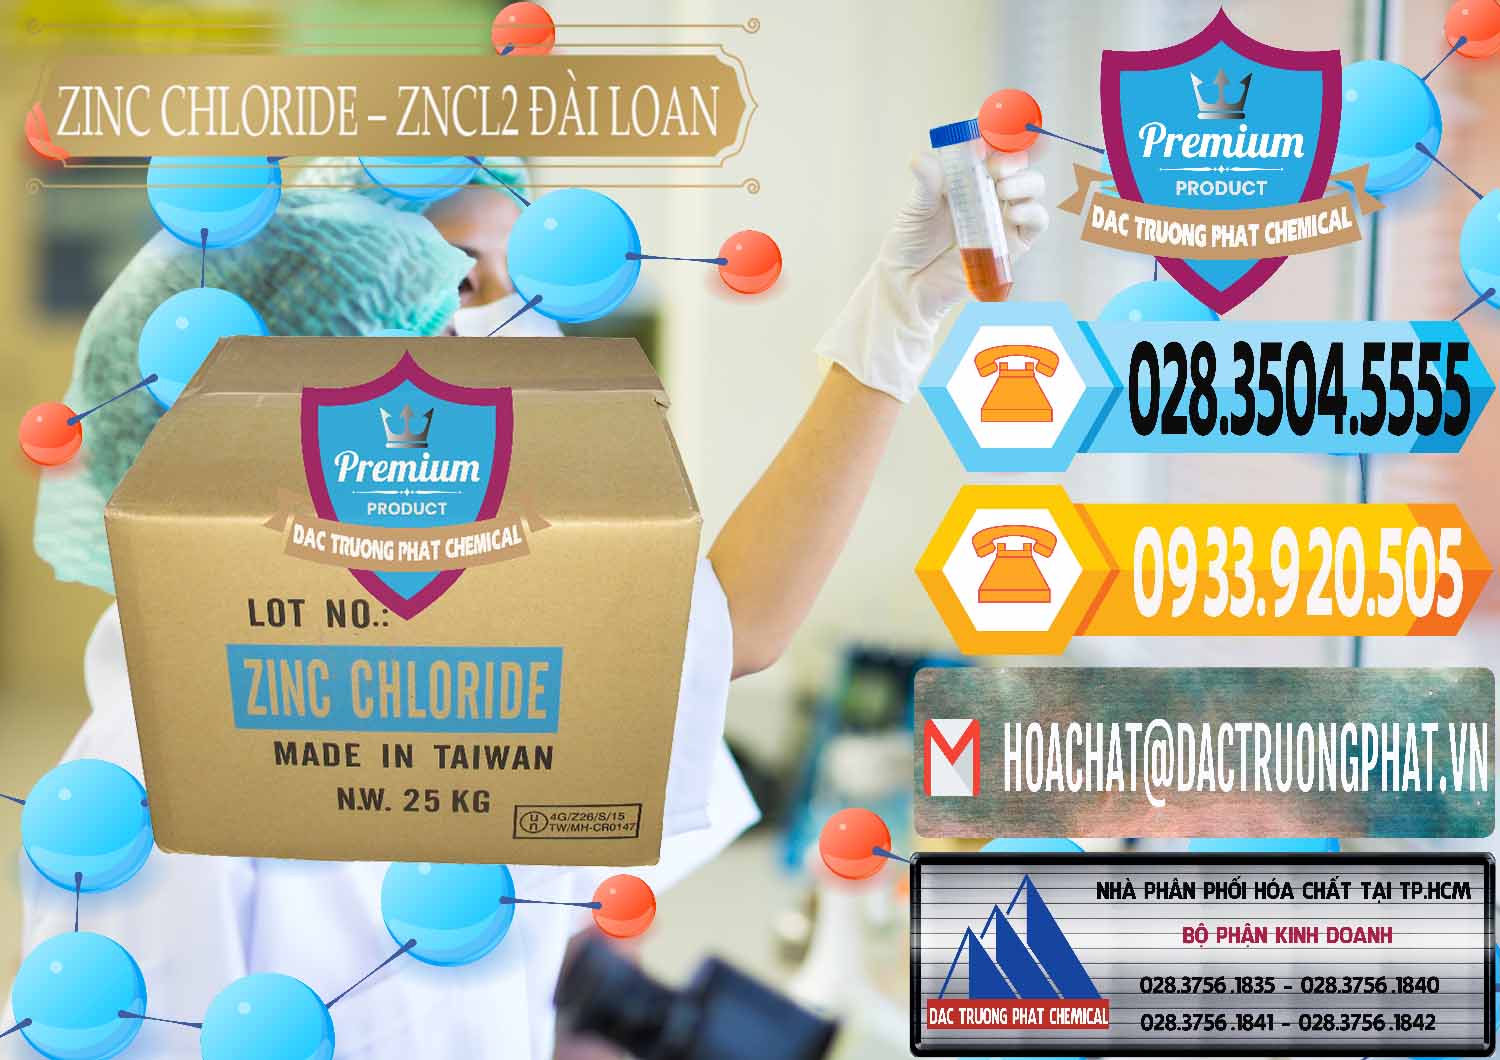 Chuyên bán _ cung cấp Zinc Chloride - ZNCL2 96% Đài Loan Taiwan - 0178 - Cty nhập khẩu - phân phối hóa chất tại TP.HCM - hoachattayrua.net